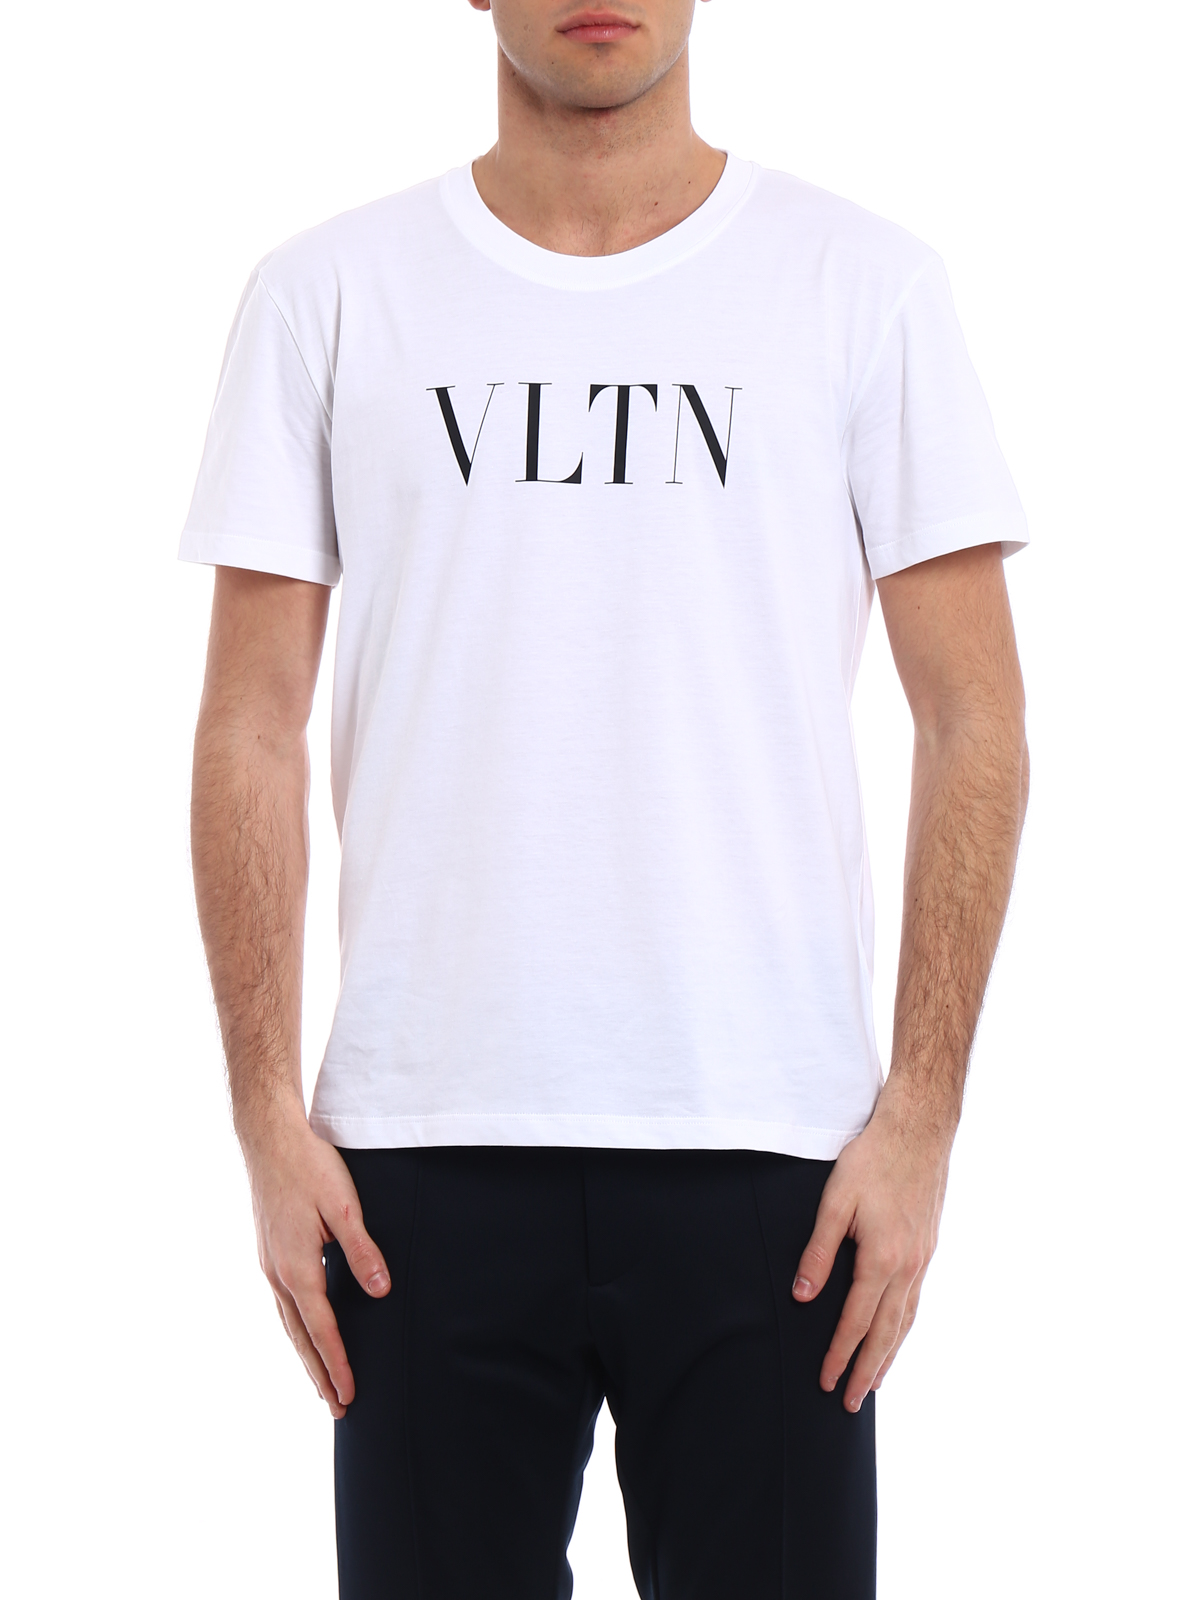 Kano Beundringsværdig arve T-shirts Valentino - VLTN print jersey T-shirt - PV0MG10V3LEA01